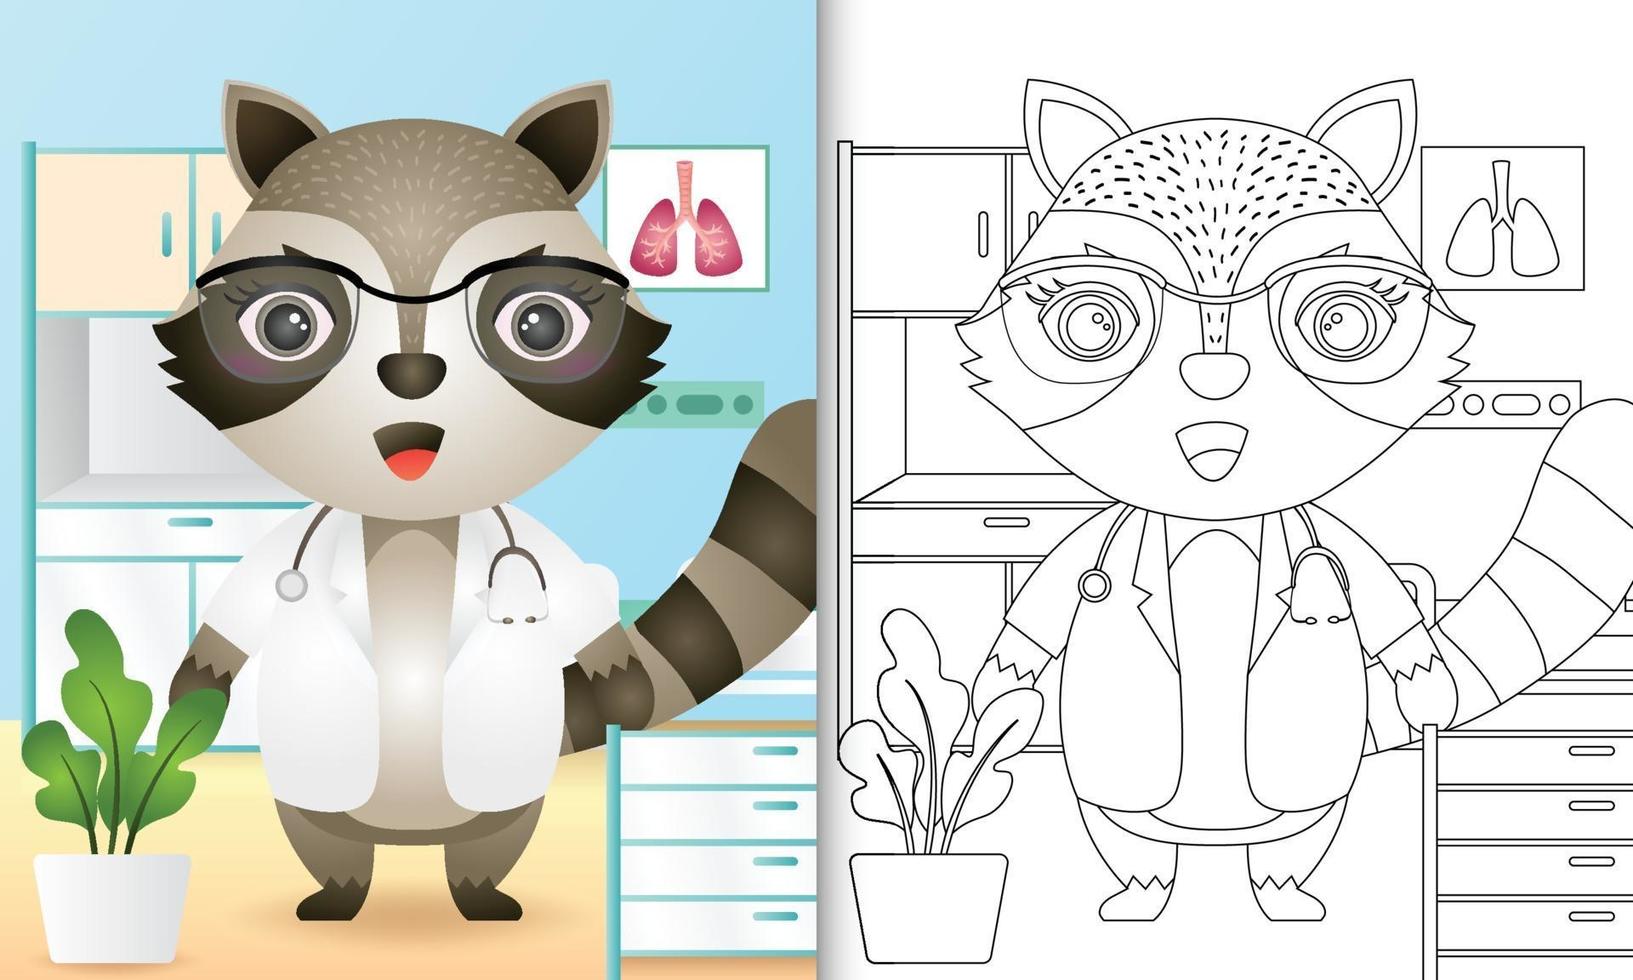 livro de colorir para crianças com uma ilustração de um médico guaxinim fofo vetor